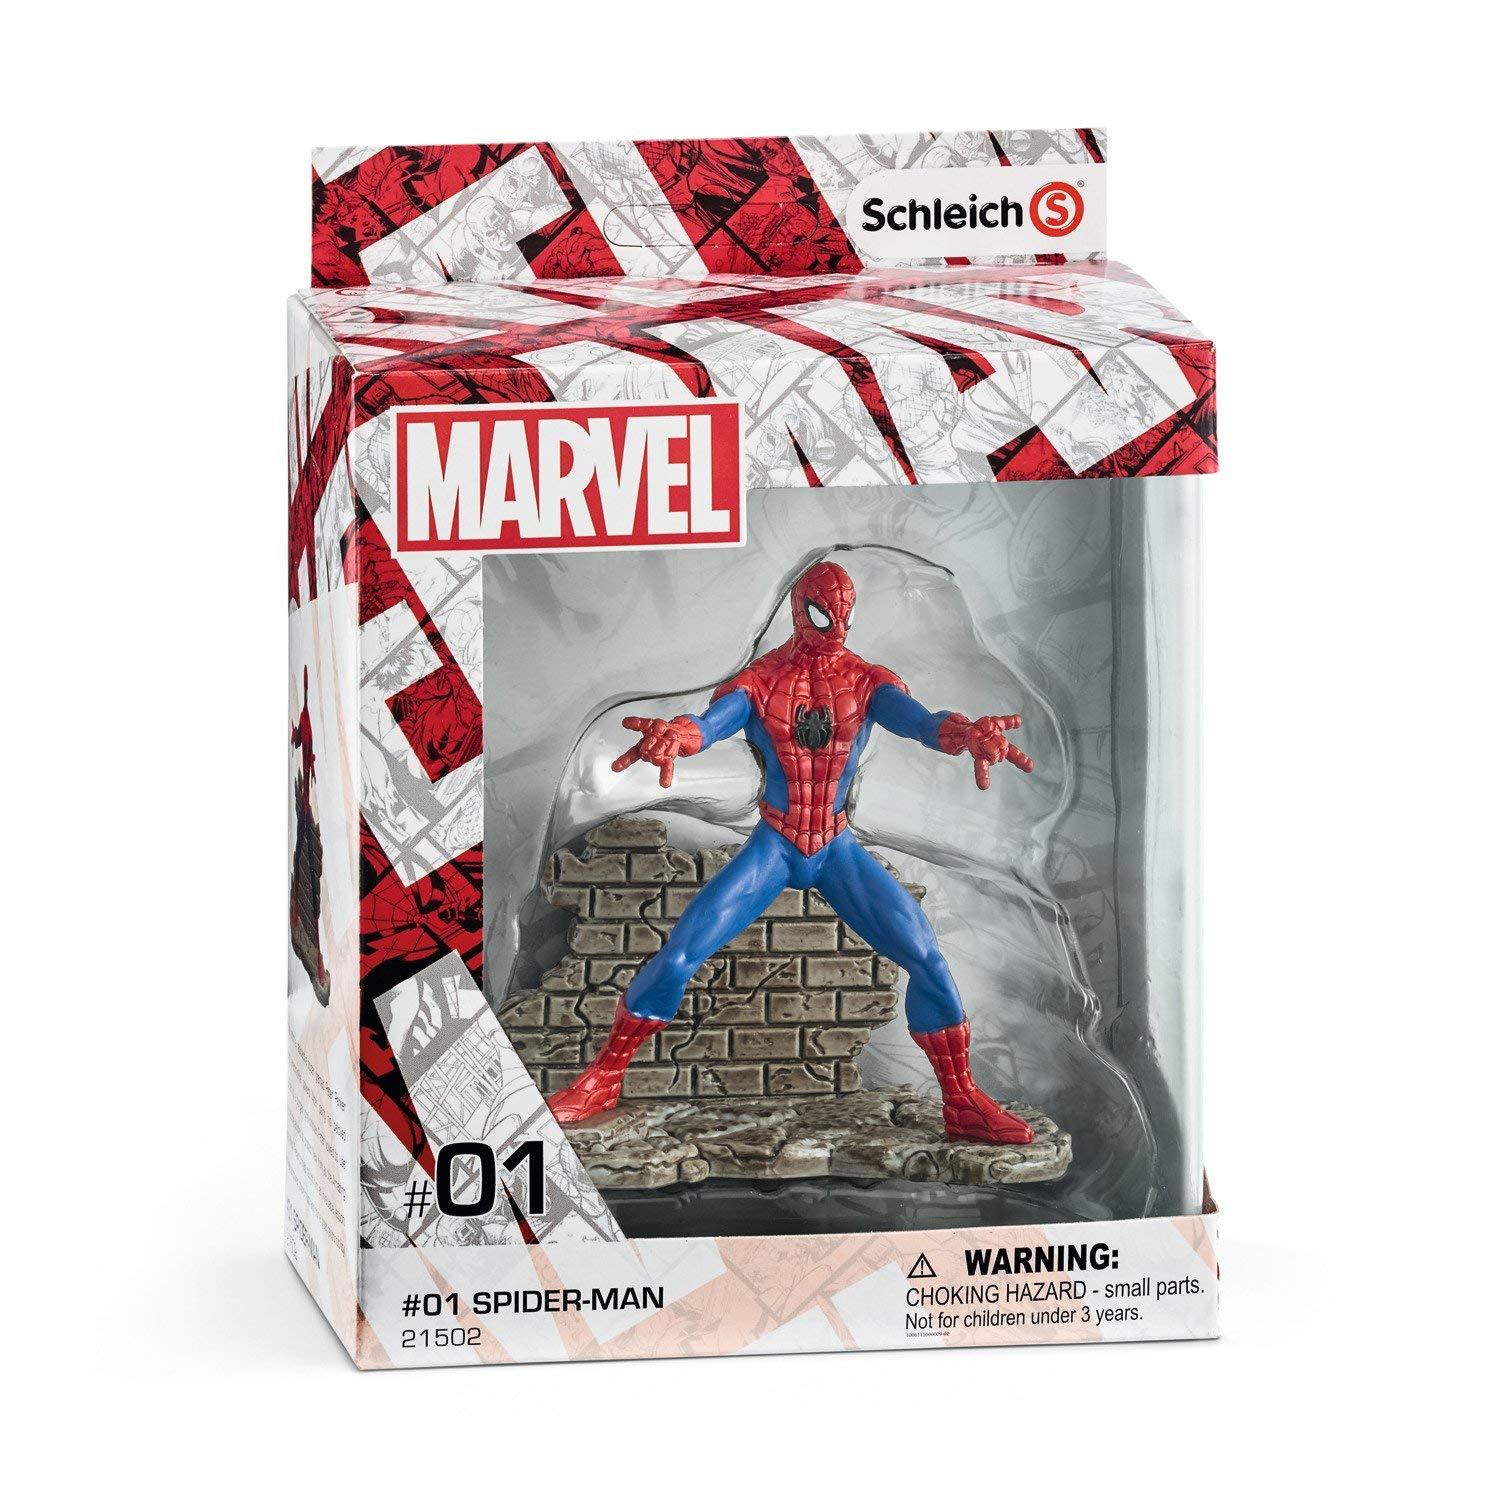 Schleich Marvel Spider-Man Diorama